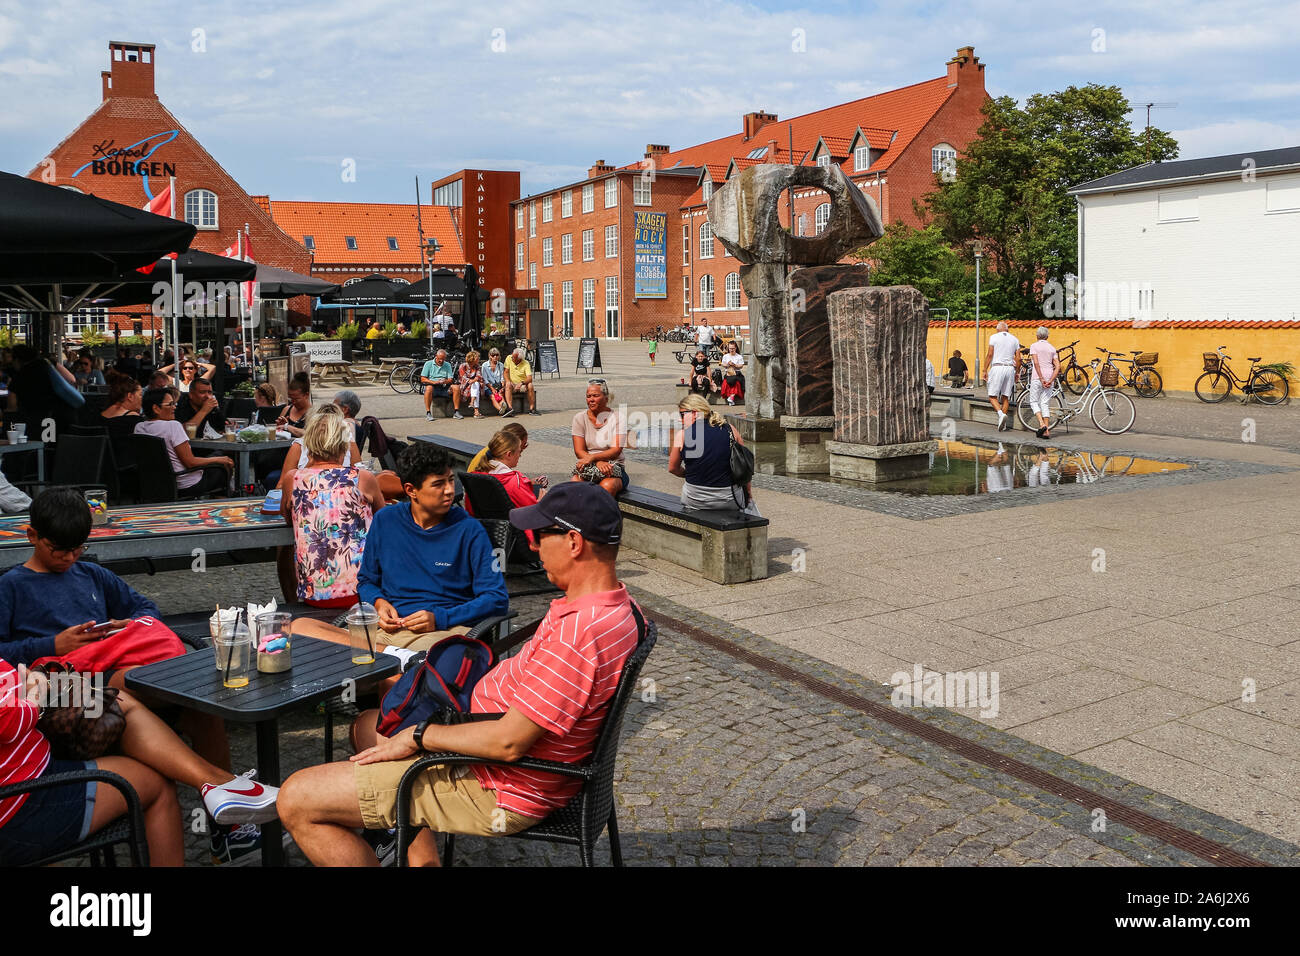 Brunnen ist in Skagen, Dänemark am 28. Juli 2019 Skagen ist die nördlichste Stadt Dänemarks, an der Ostküste der Halbinsel Skagen Odde ganz im Norden von Jütland. © Michal Fludra/Alamy leben Nachrichten Stockfoto